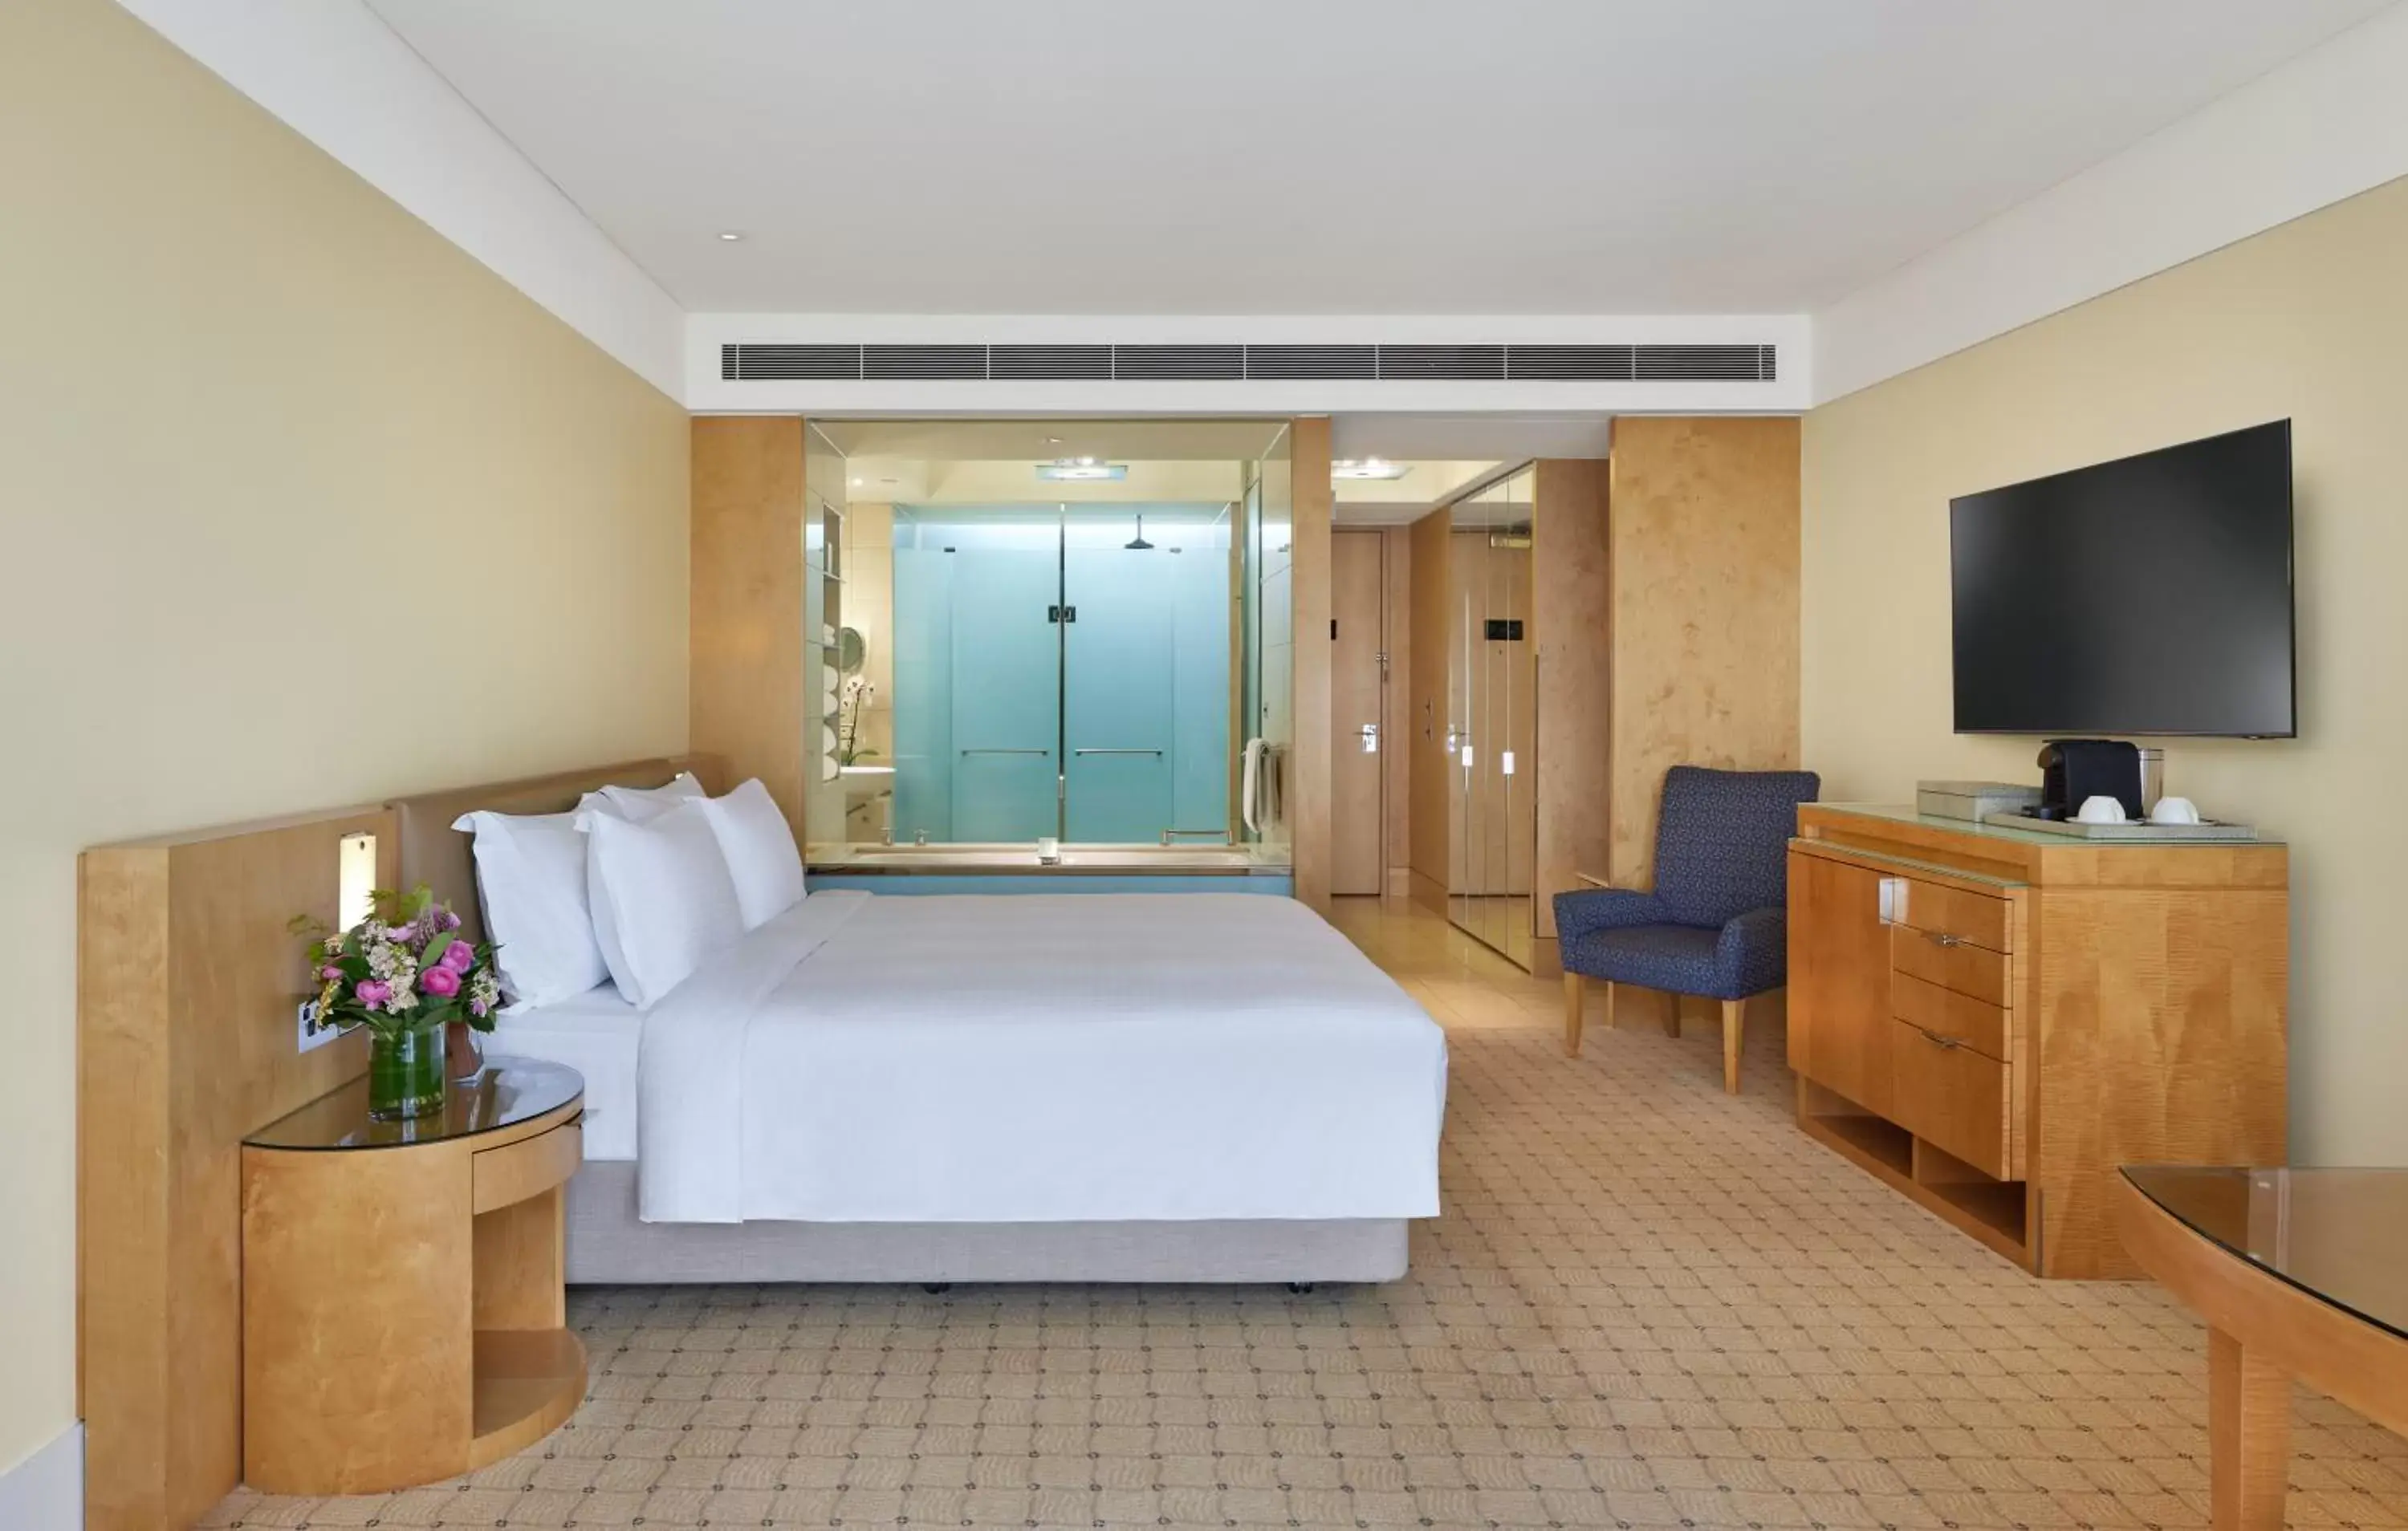 Bedroom, TV/Entertainment Center in The Fullerton Hotel Sydney